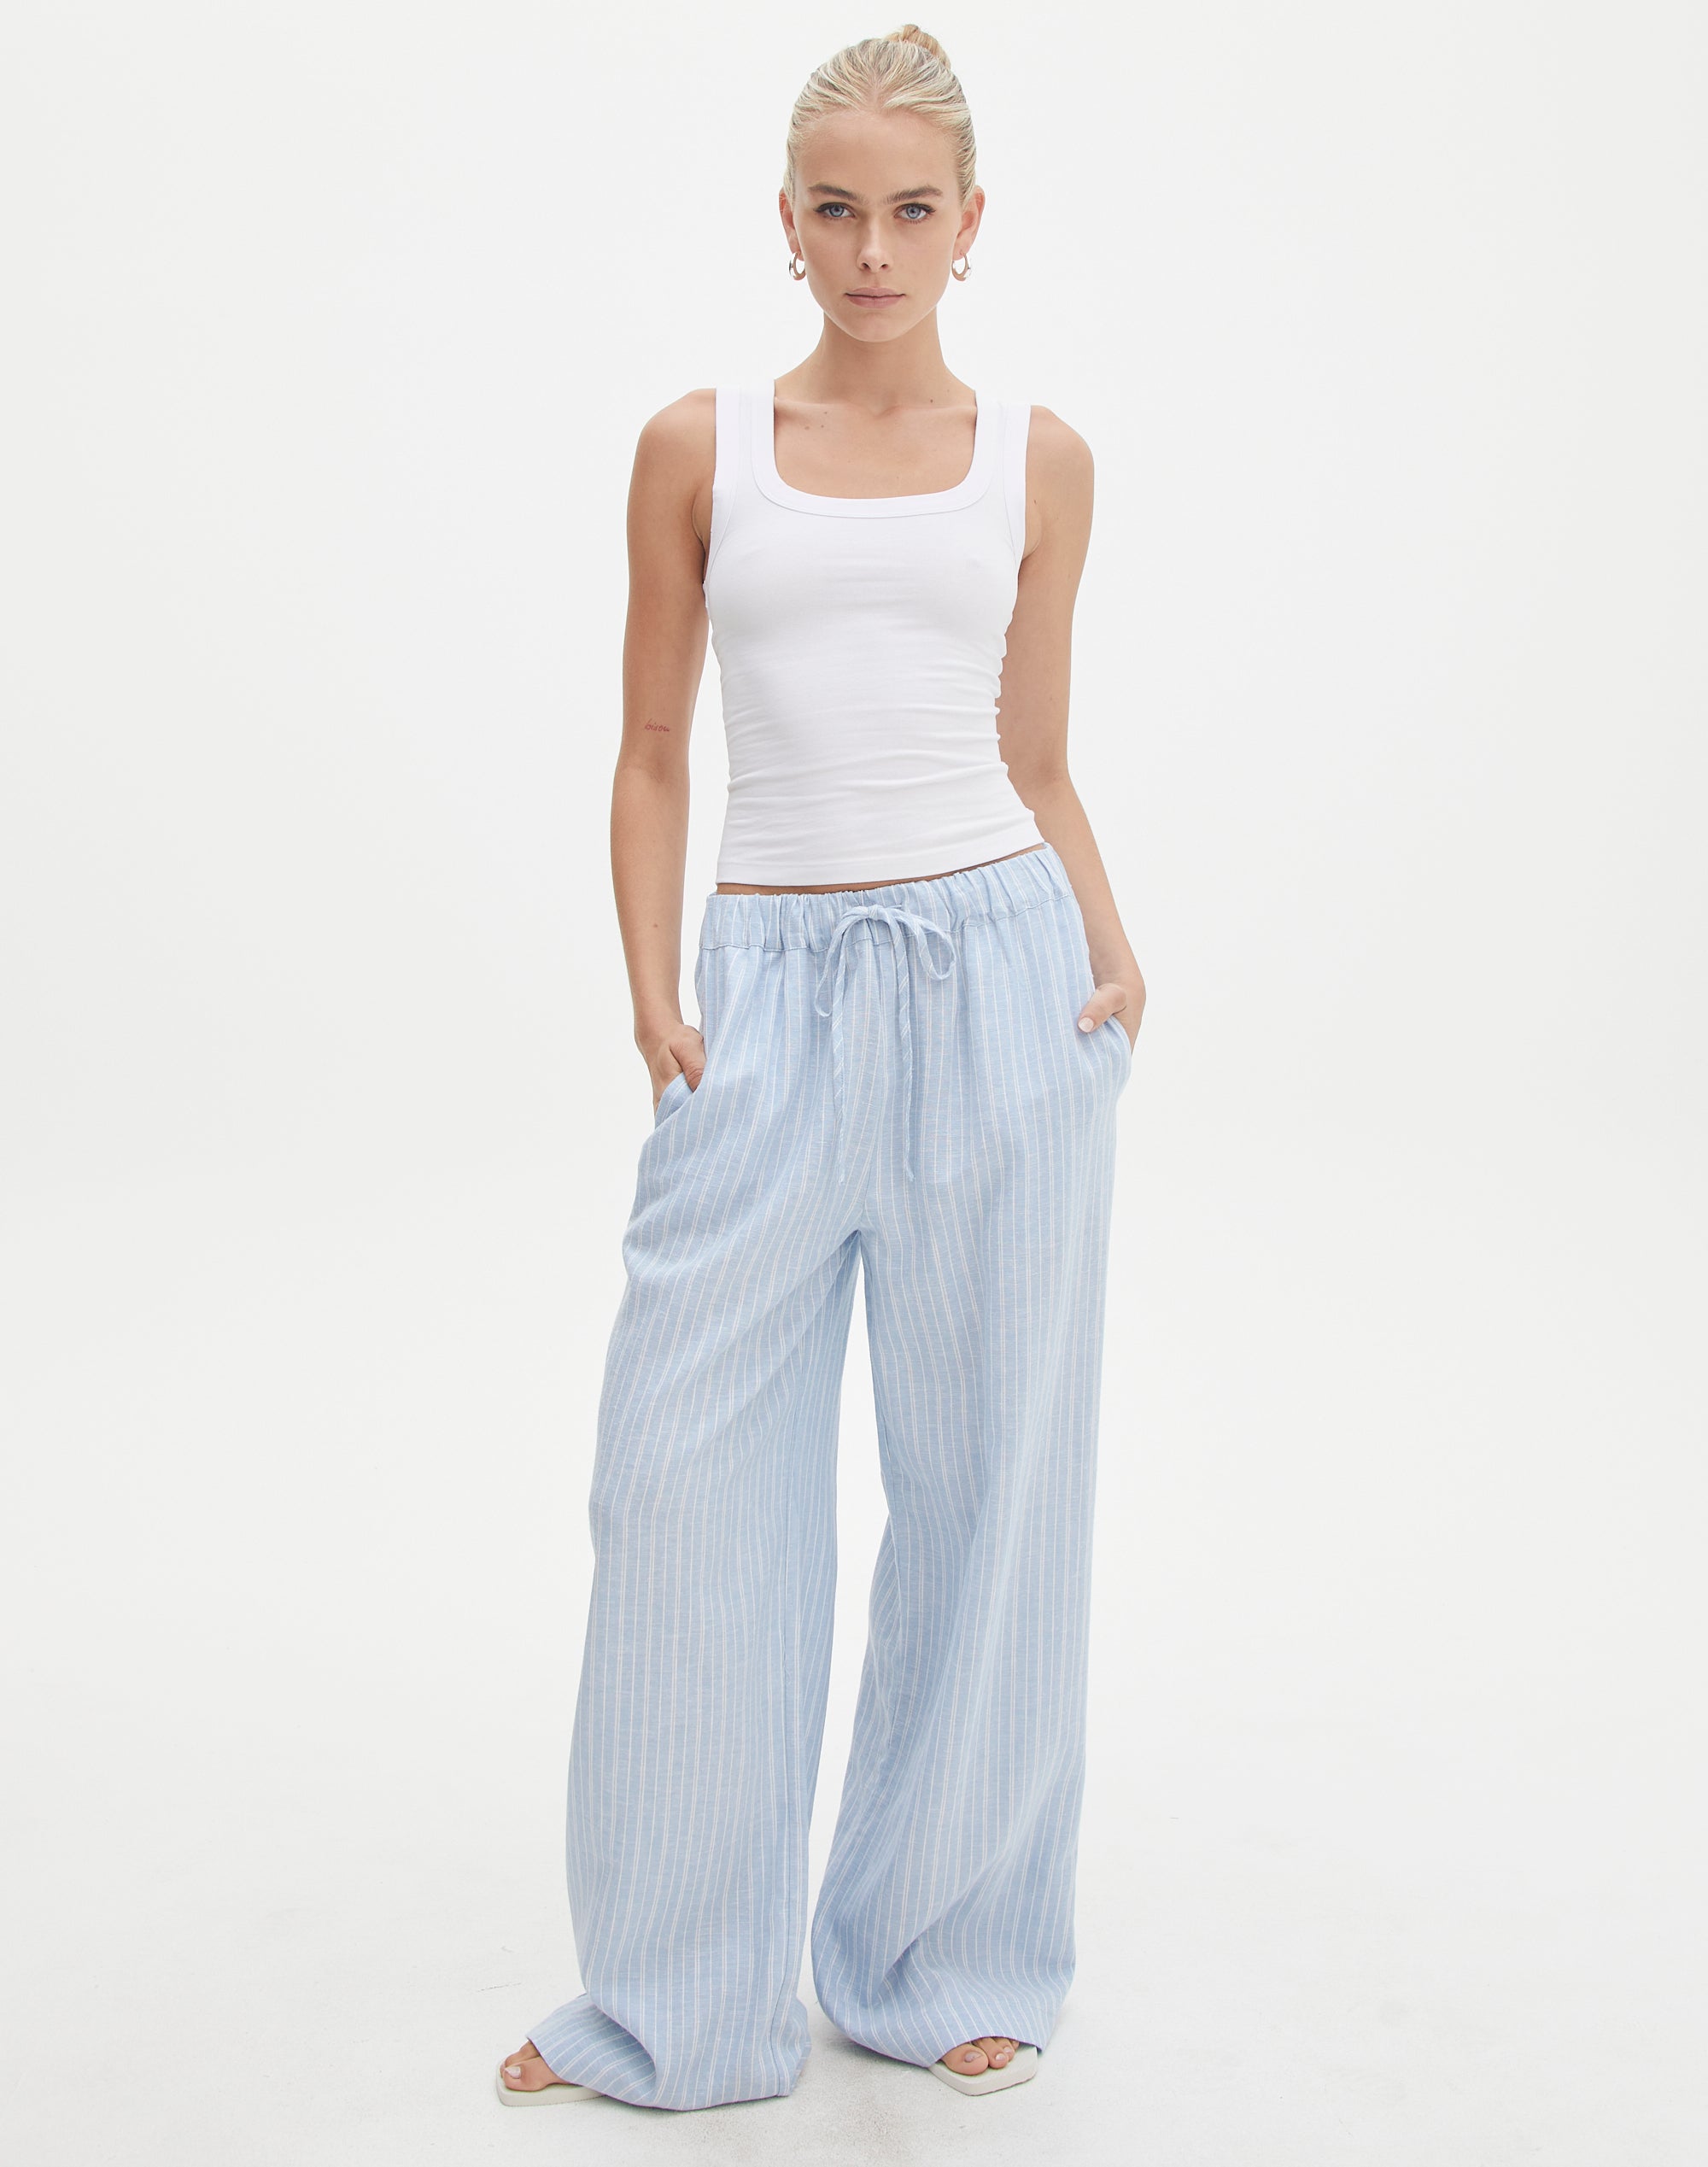 Stripe Linen Blend Pant in Elsie Jeans Stripe